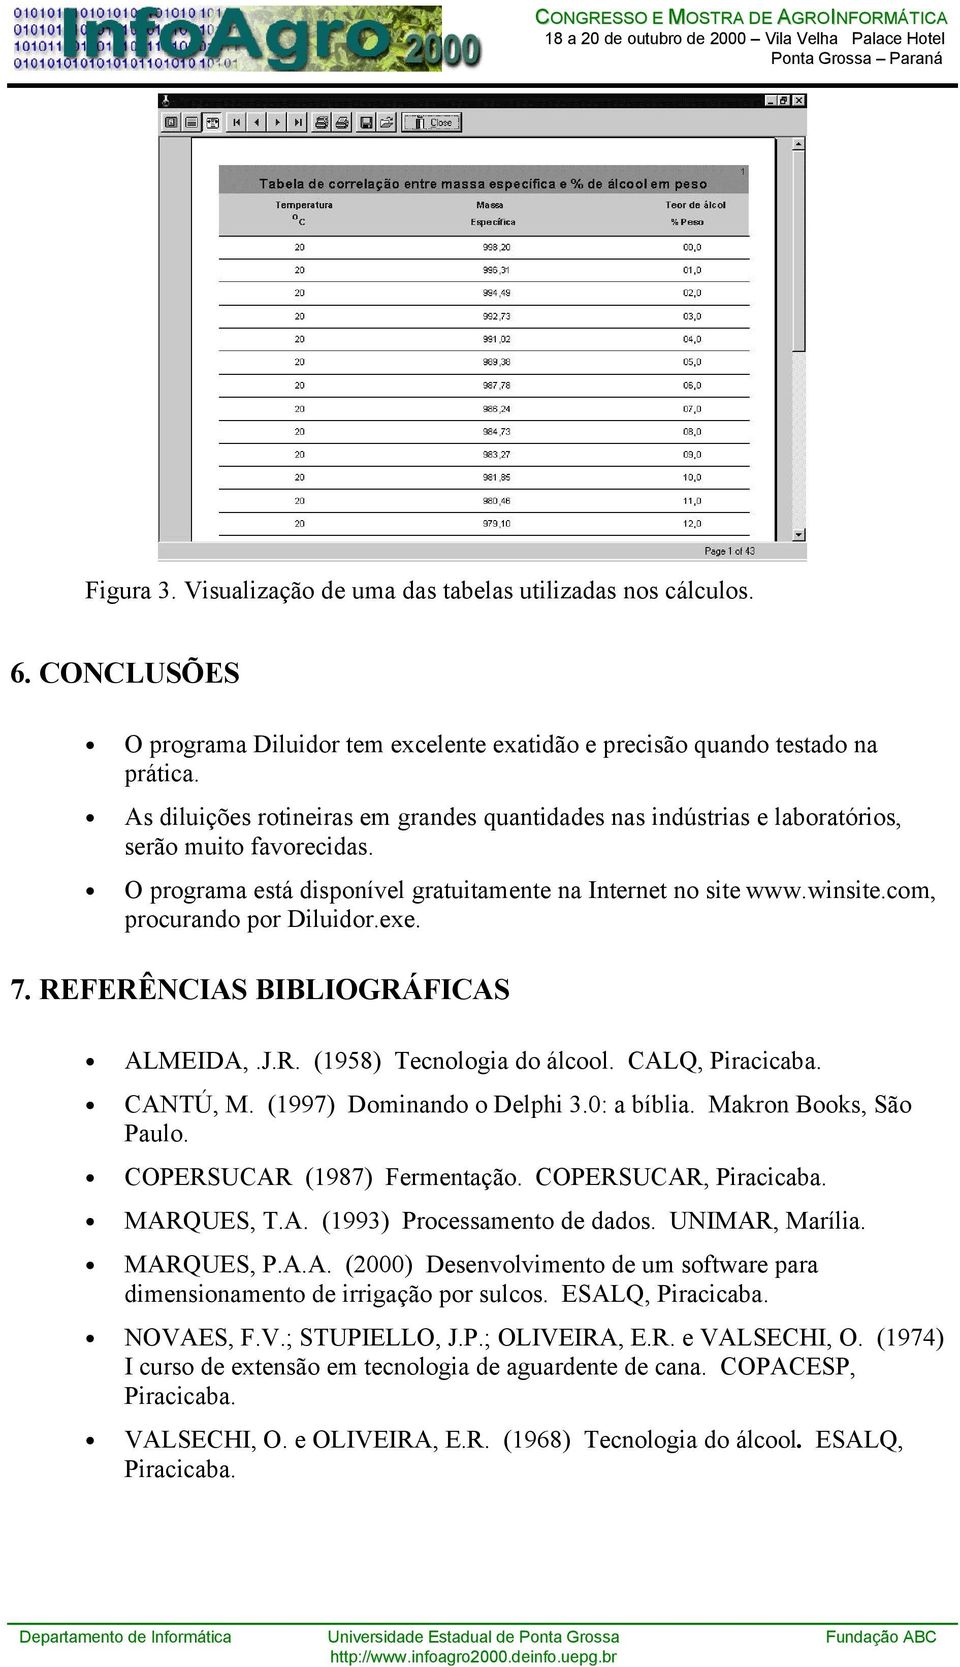 com, procurando por Diluidor.exe. 7. REFERÊNCIAS BIBLIOGRÁFICAS ALMEIDA,.J.R. (1958) Tecnologia do álcool. CALQ, Piracicaba. CANTÚ, M. (1997) Dominando o Delphi 3.0: a bíblia. Makron Books, São Paulo.